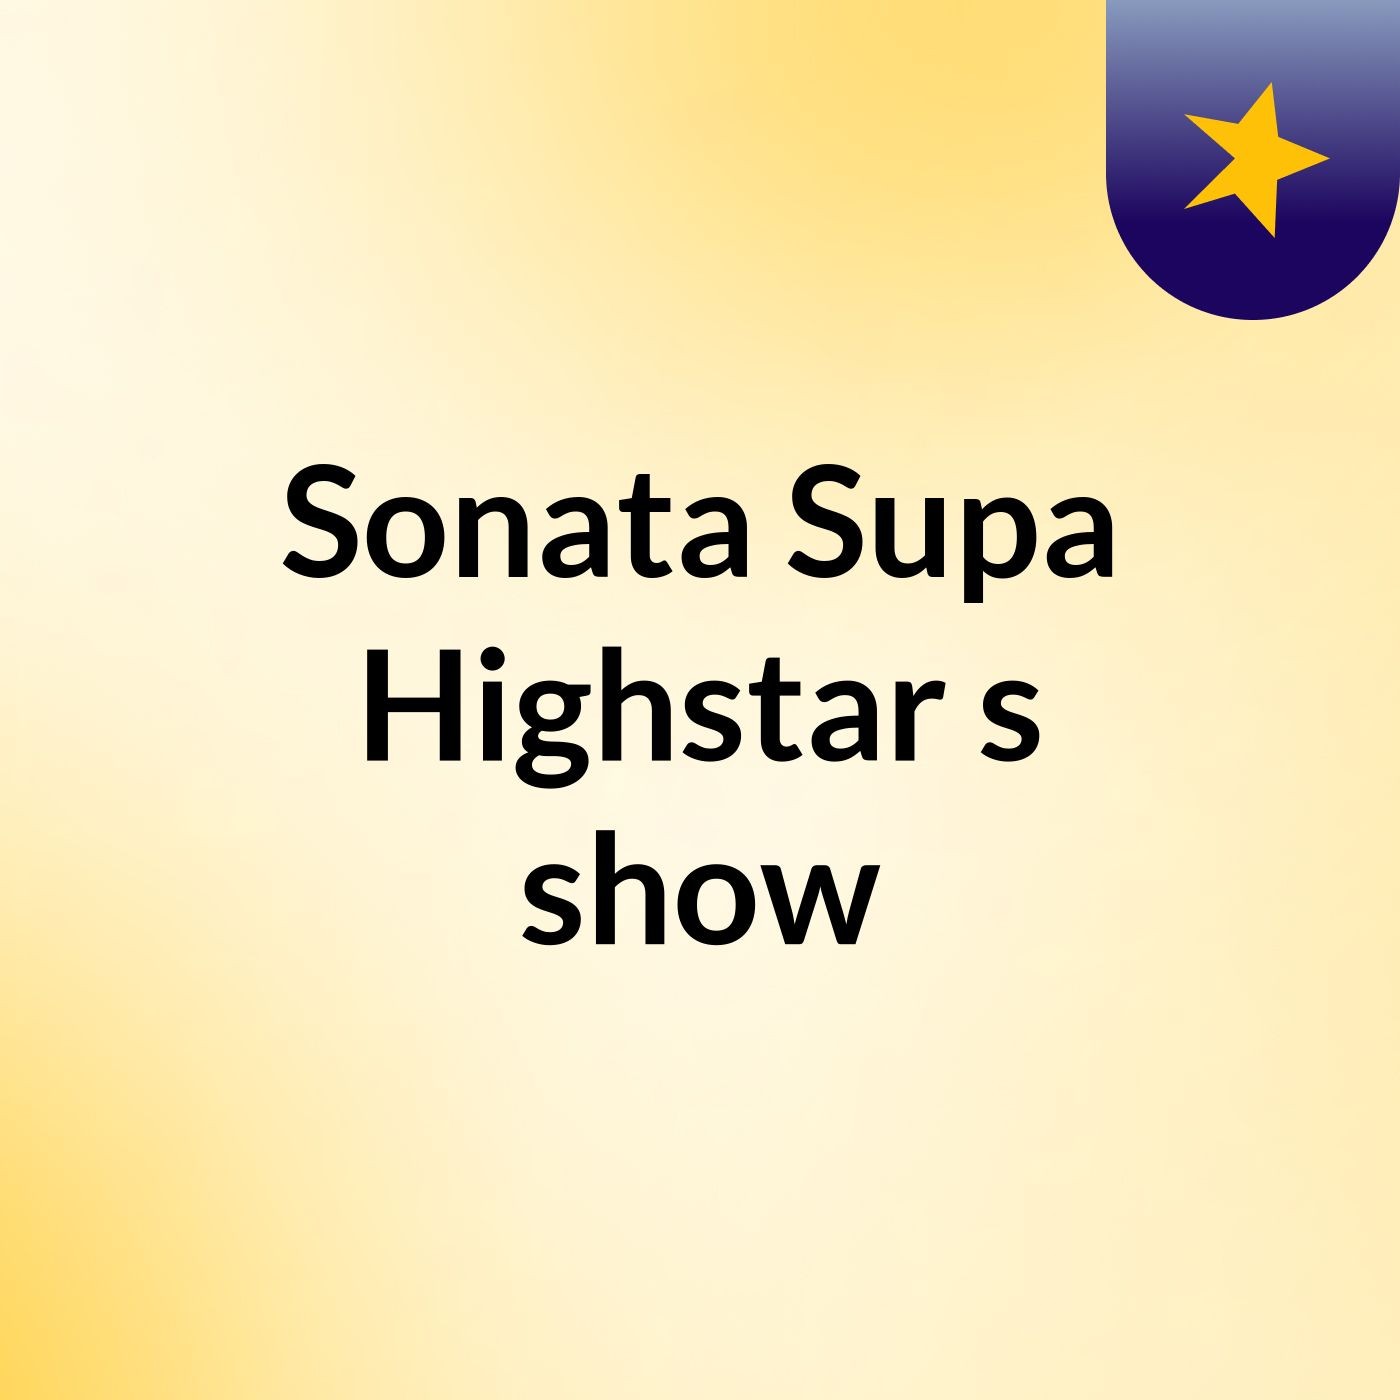 Sonata Supa Highstar's show